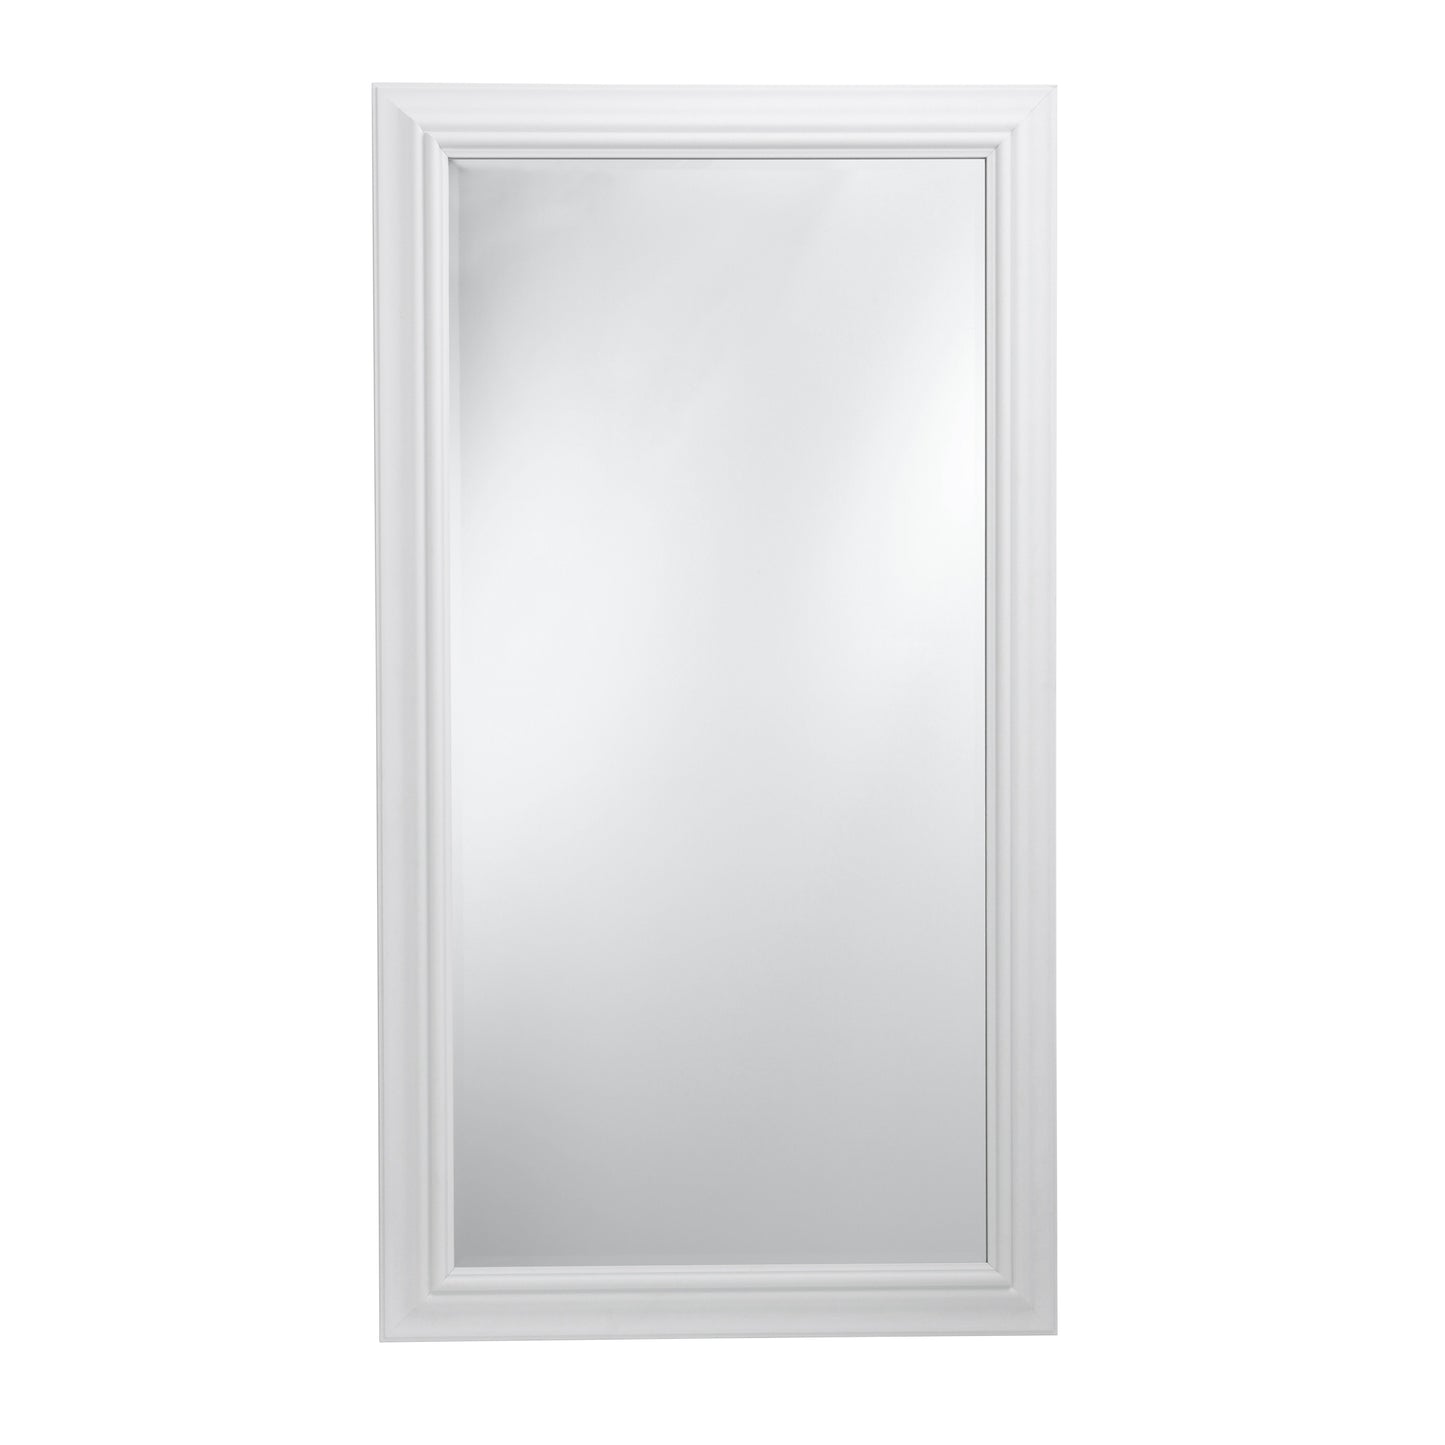 Large White Mirror